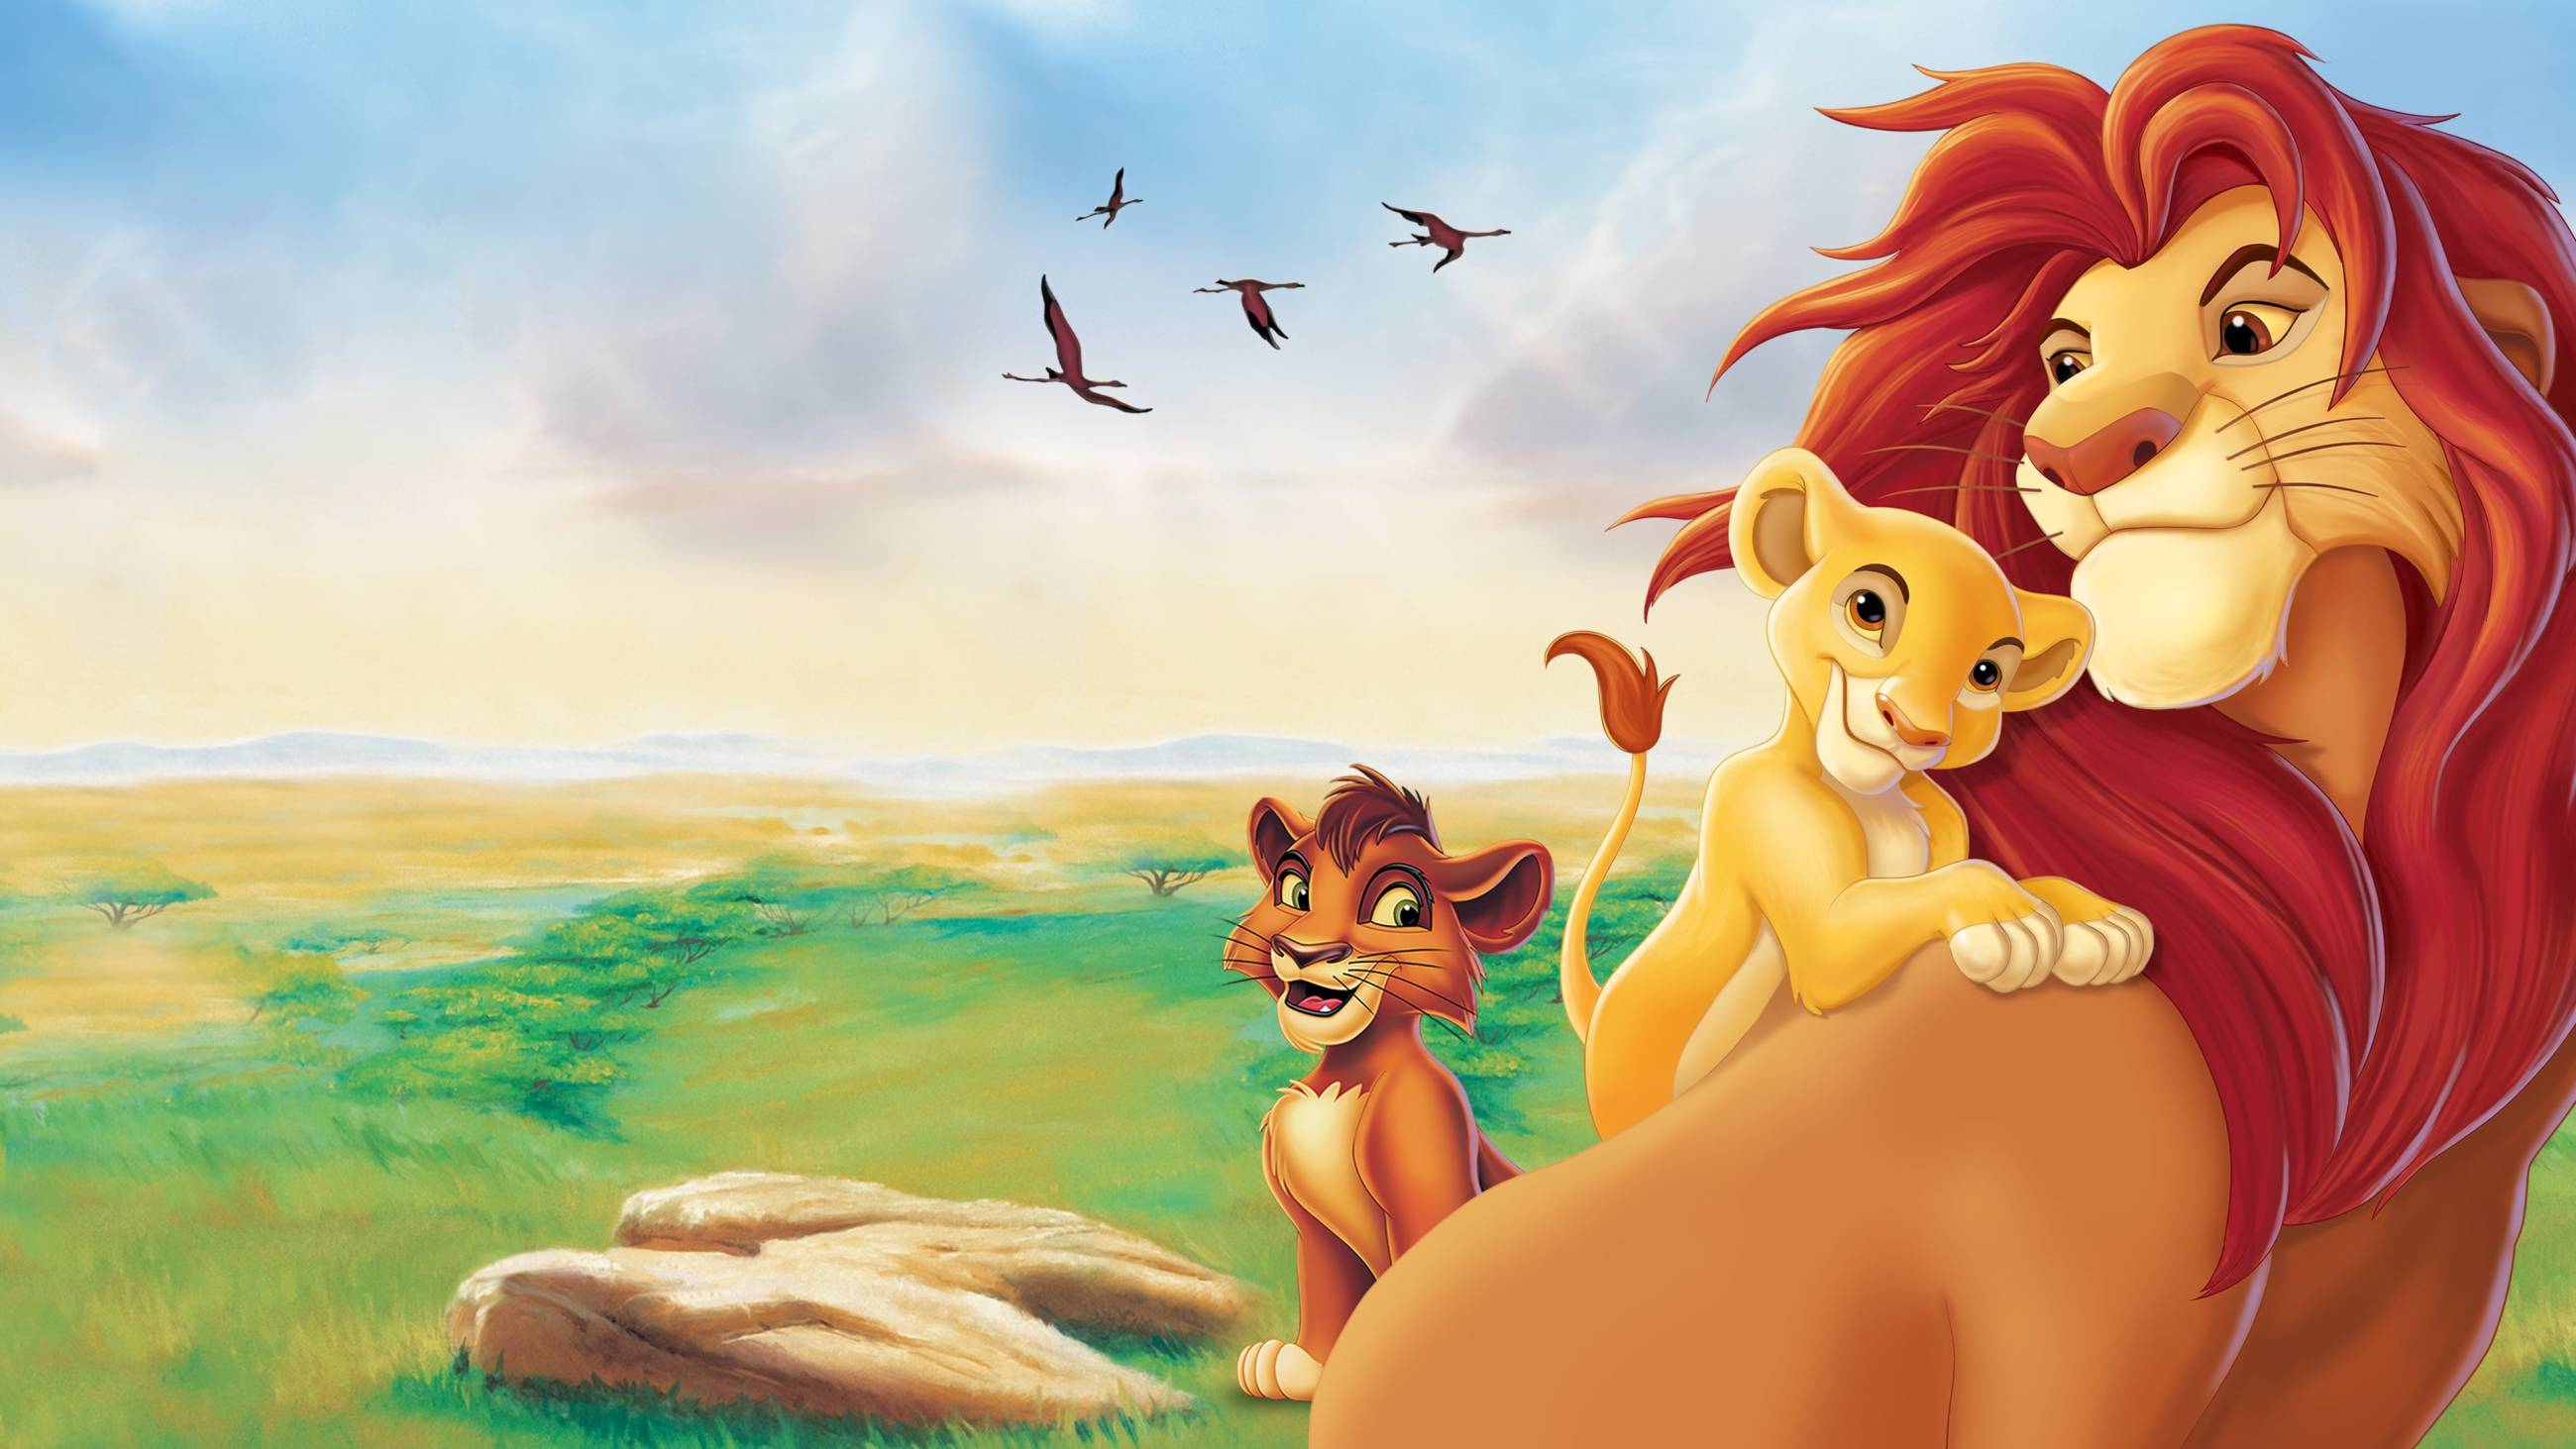 Cubierta de El rey león 2: El tesoro de Simba